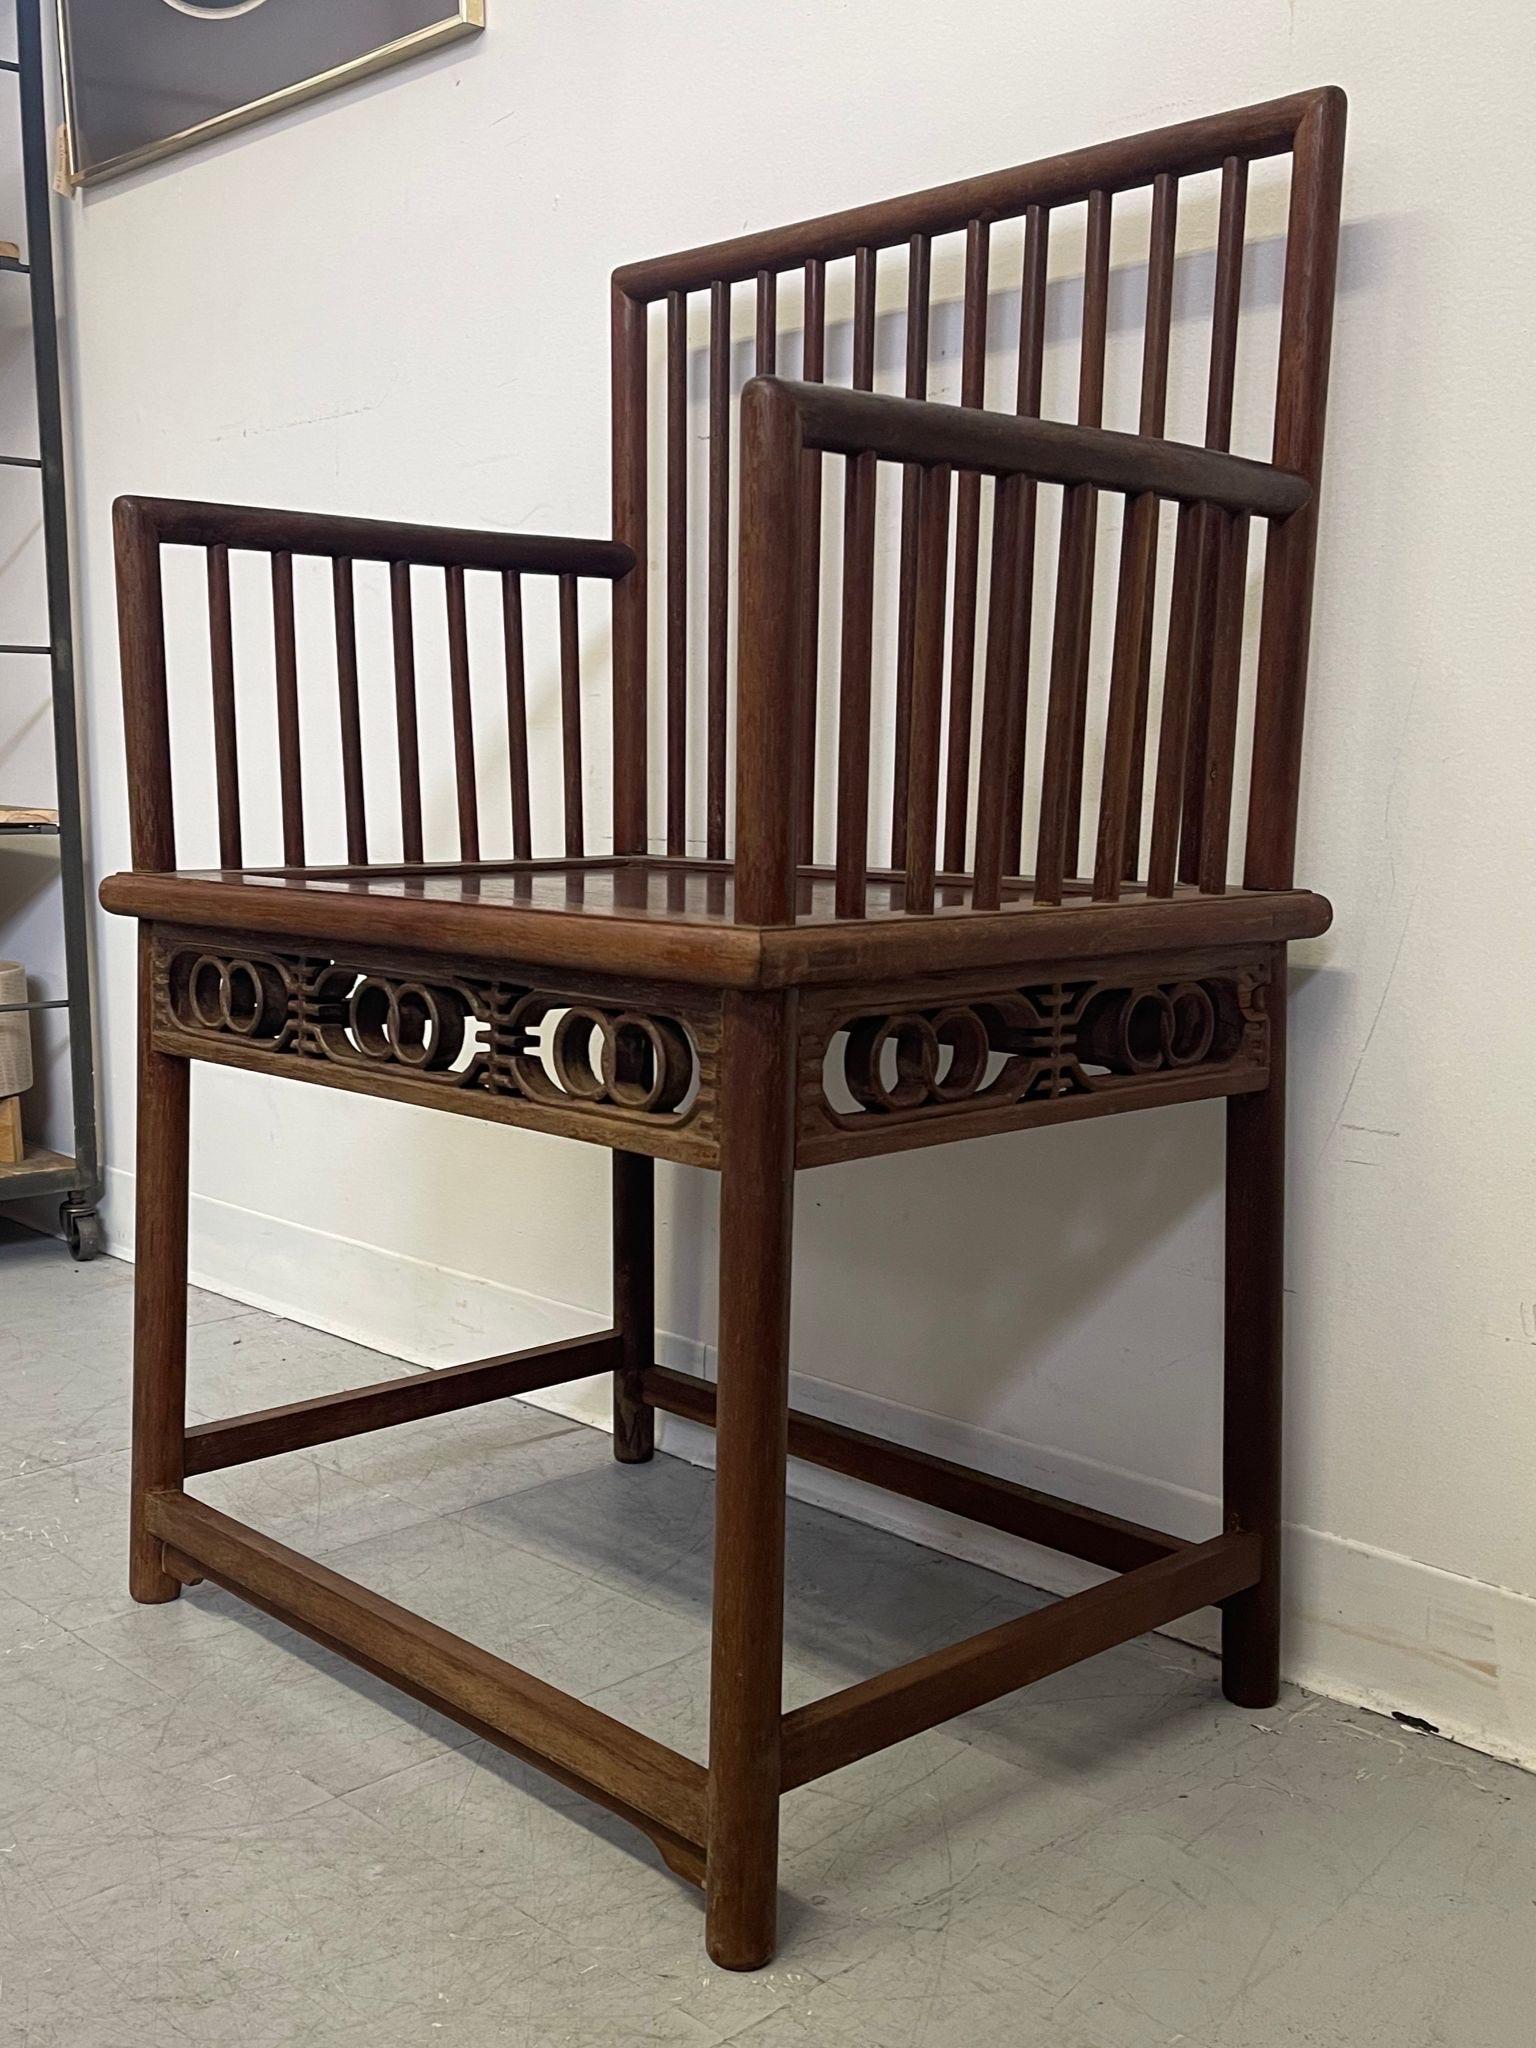 Cette chaise chinoise ancienne présente des détails sculptés en bois, du bois mat et des tons de noyer. Le vieillissement du bois est magnifique, comme en témoigne l'ensemble de la pièce. Vintage Condition Consistent avec l'âge 

Dimensions. 23 L ;